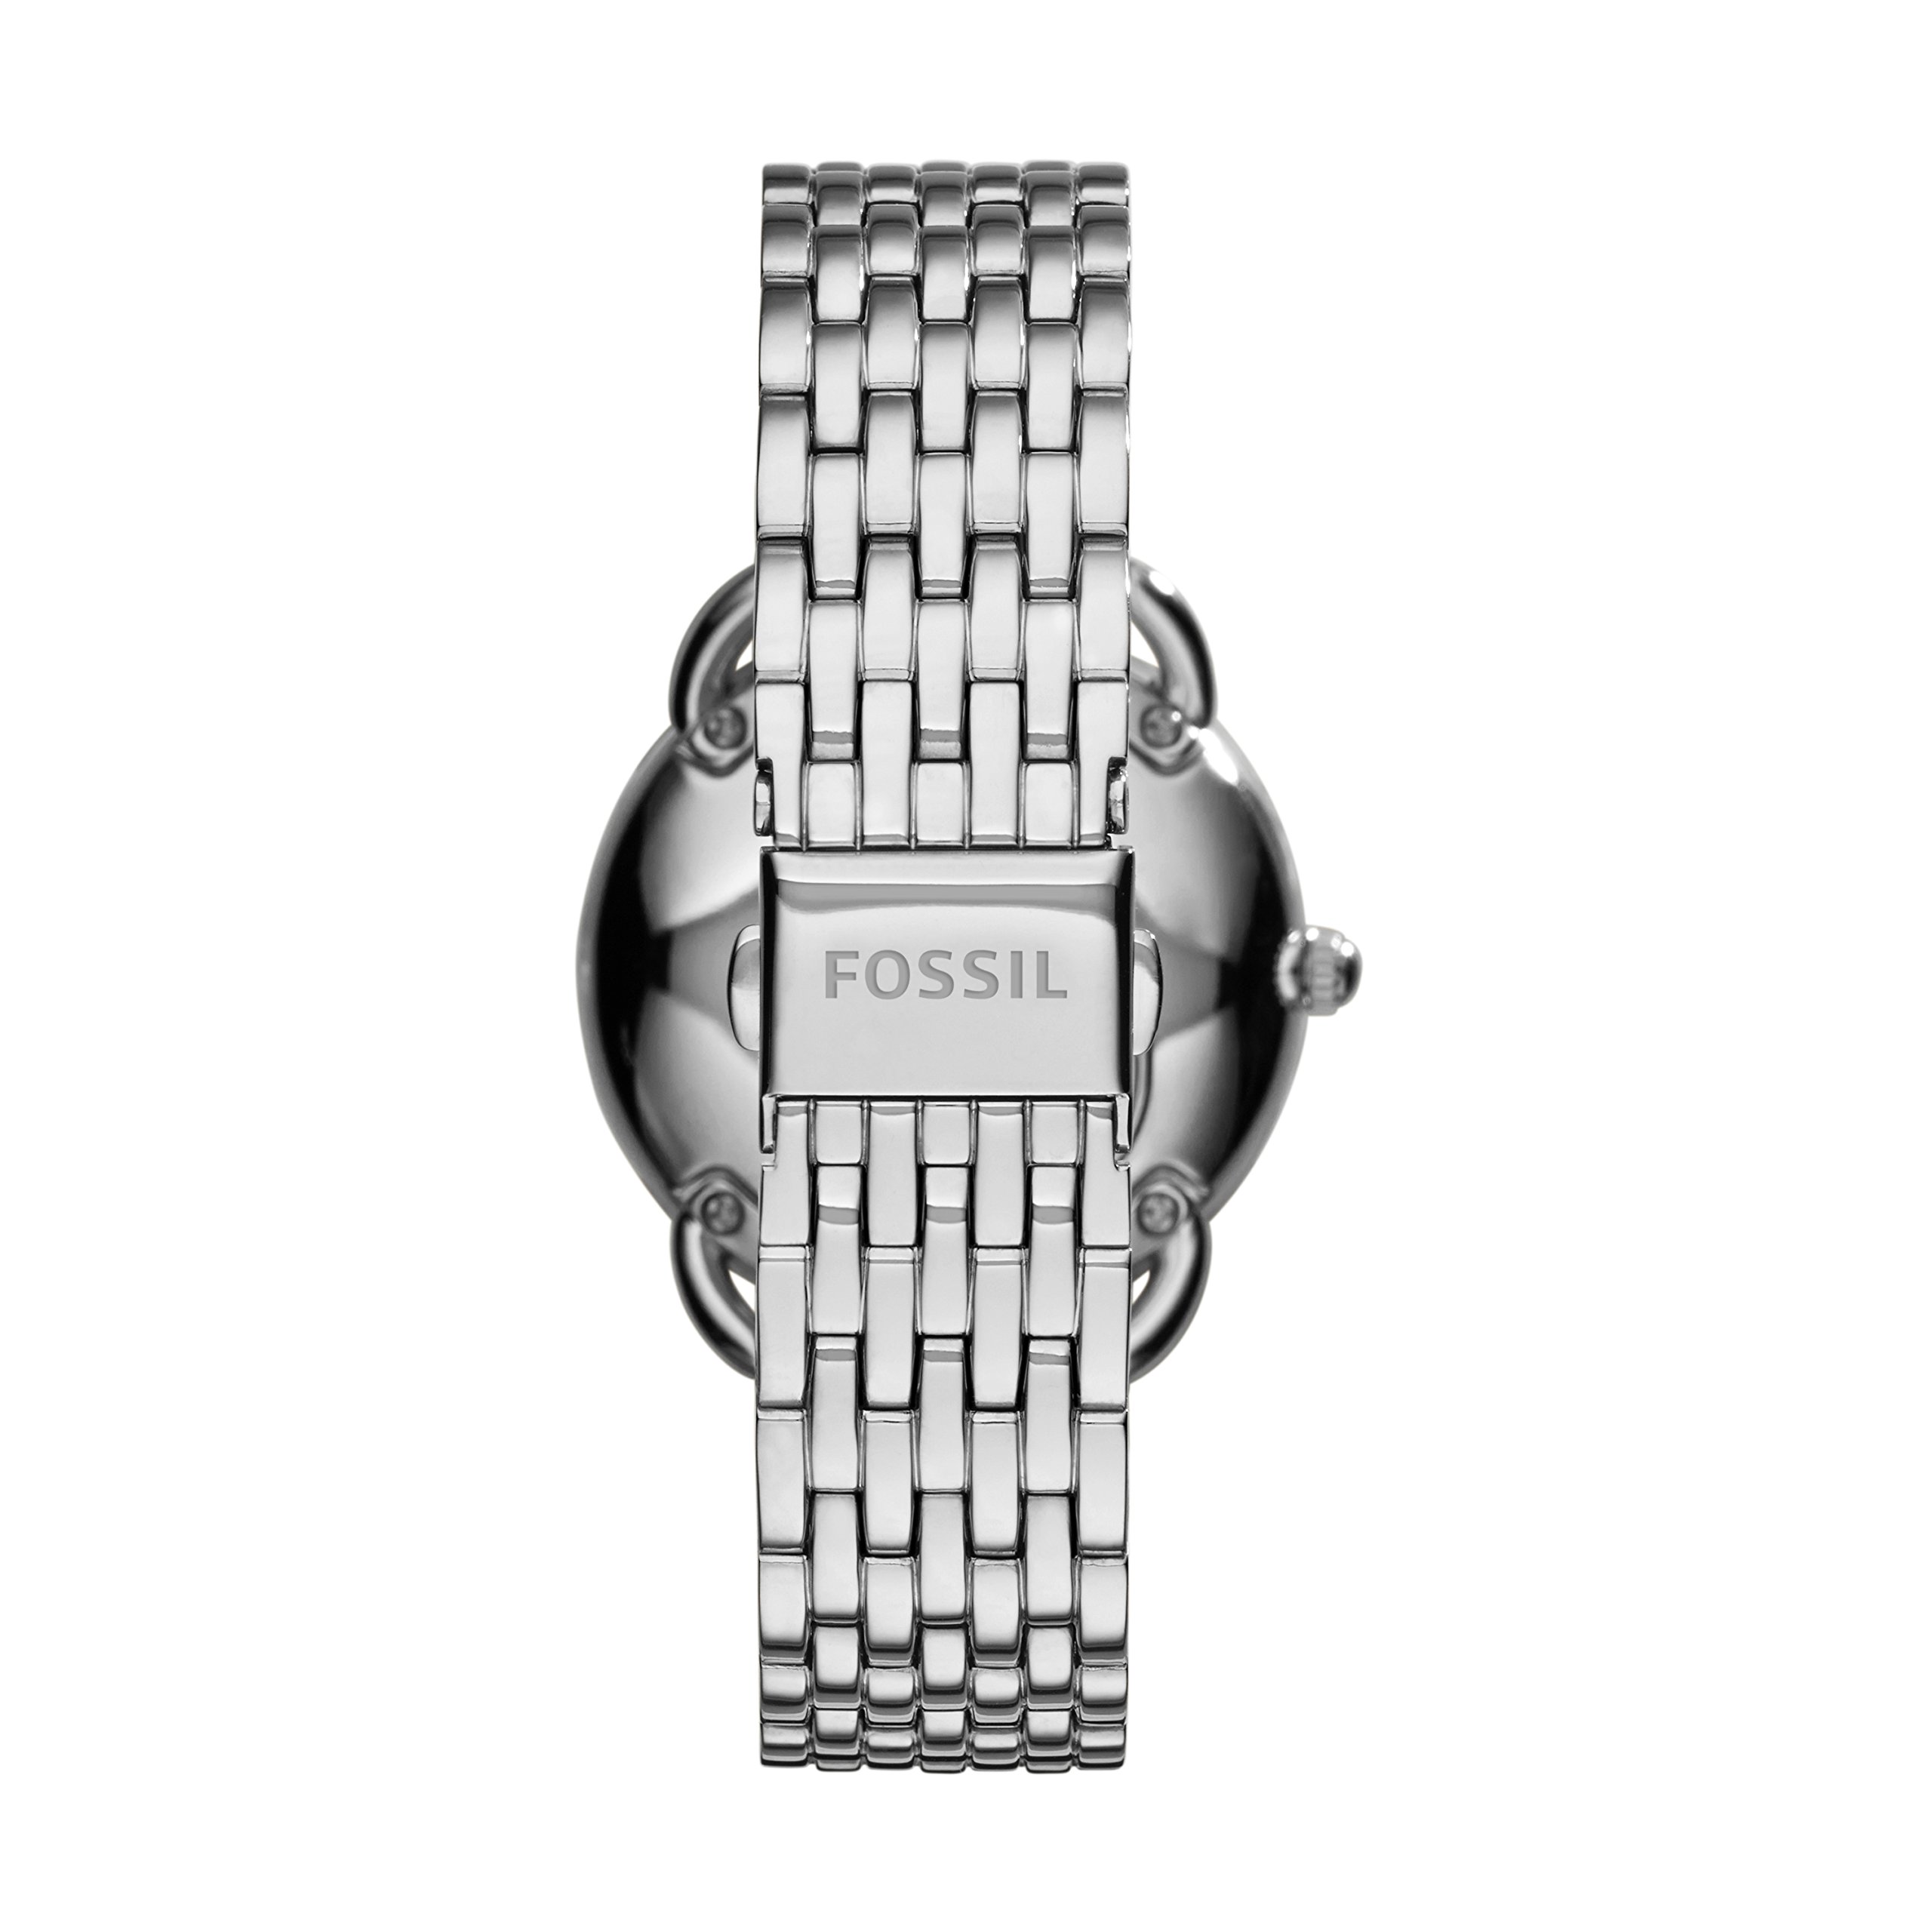 Fossil Women's Stainless Steel Bracelet Watch